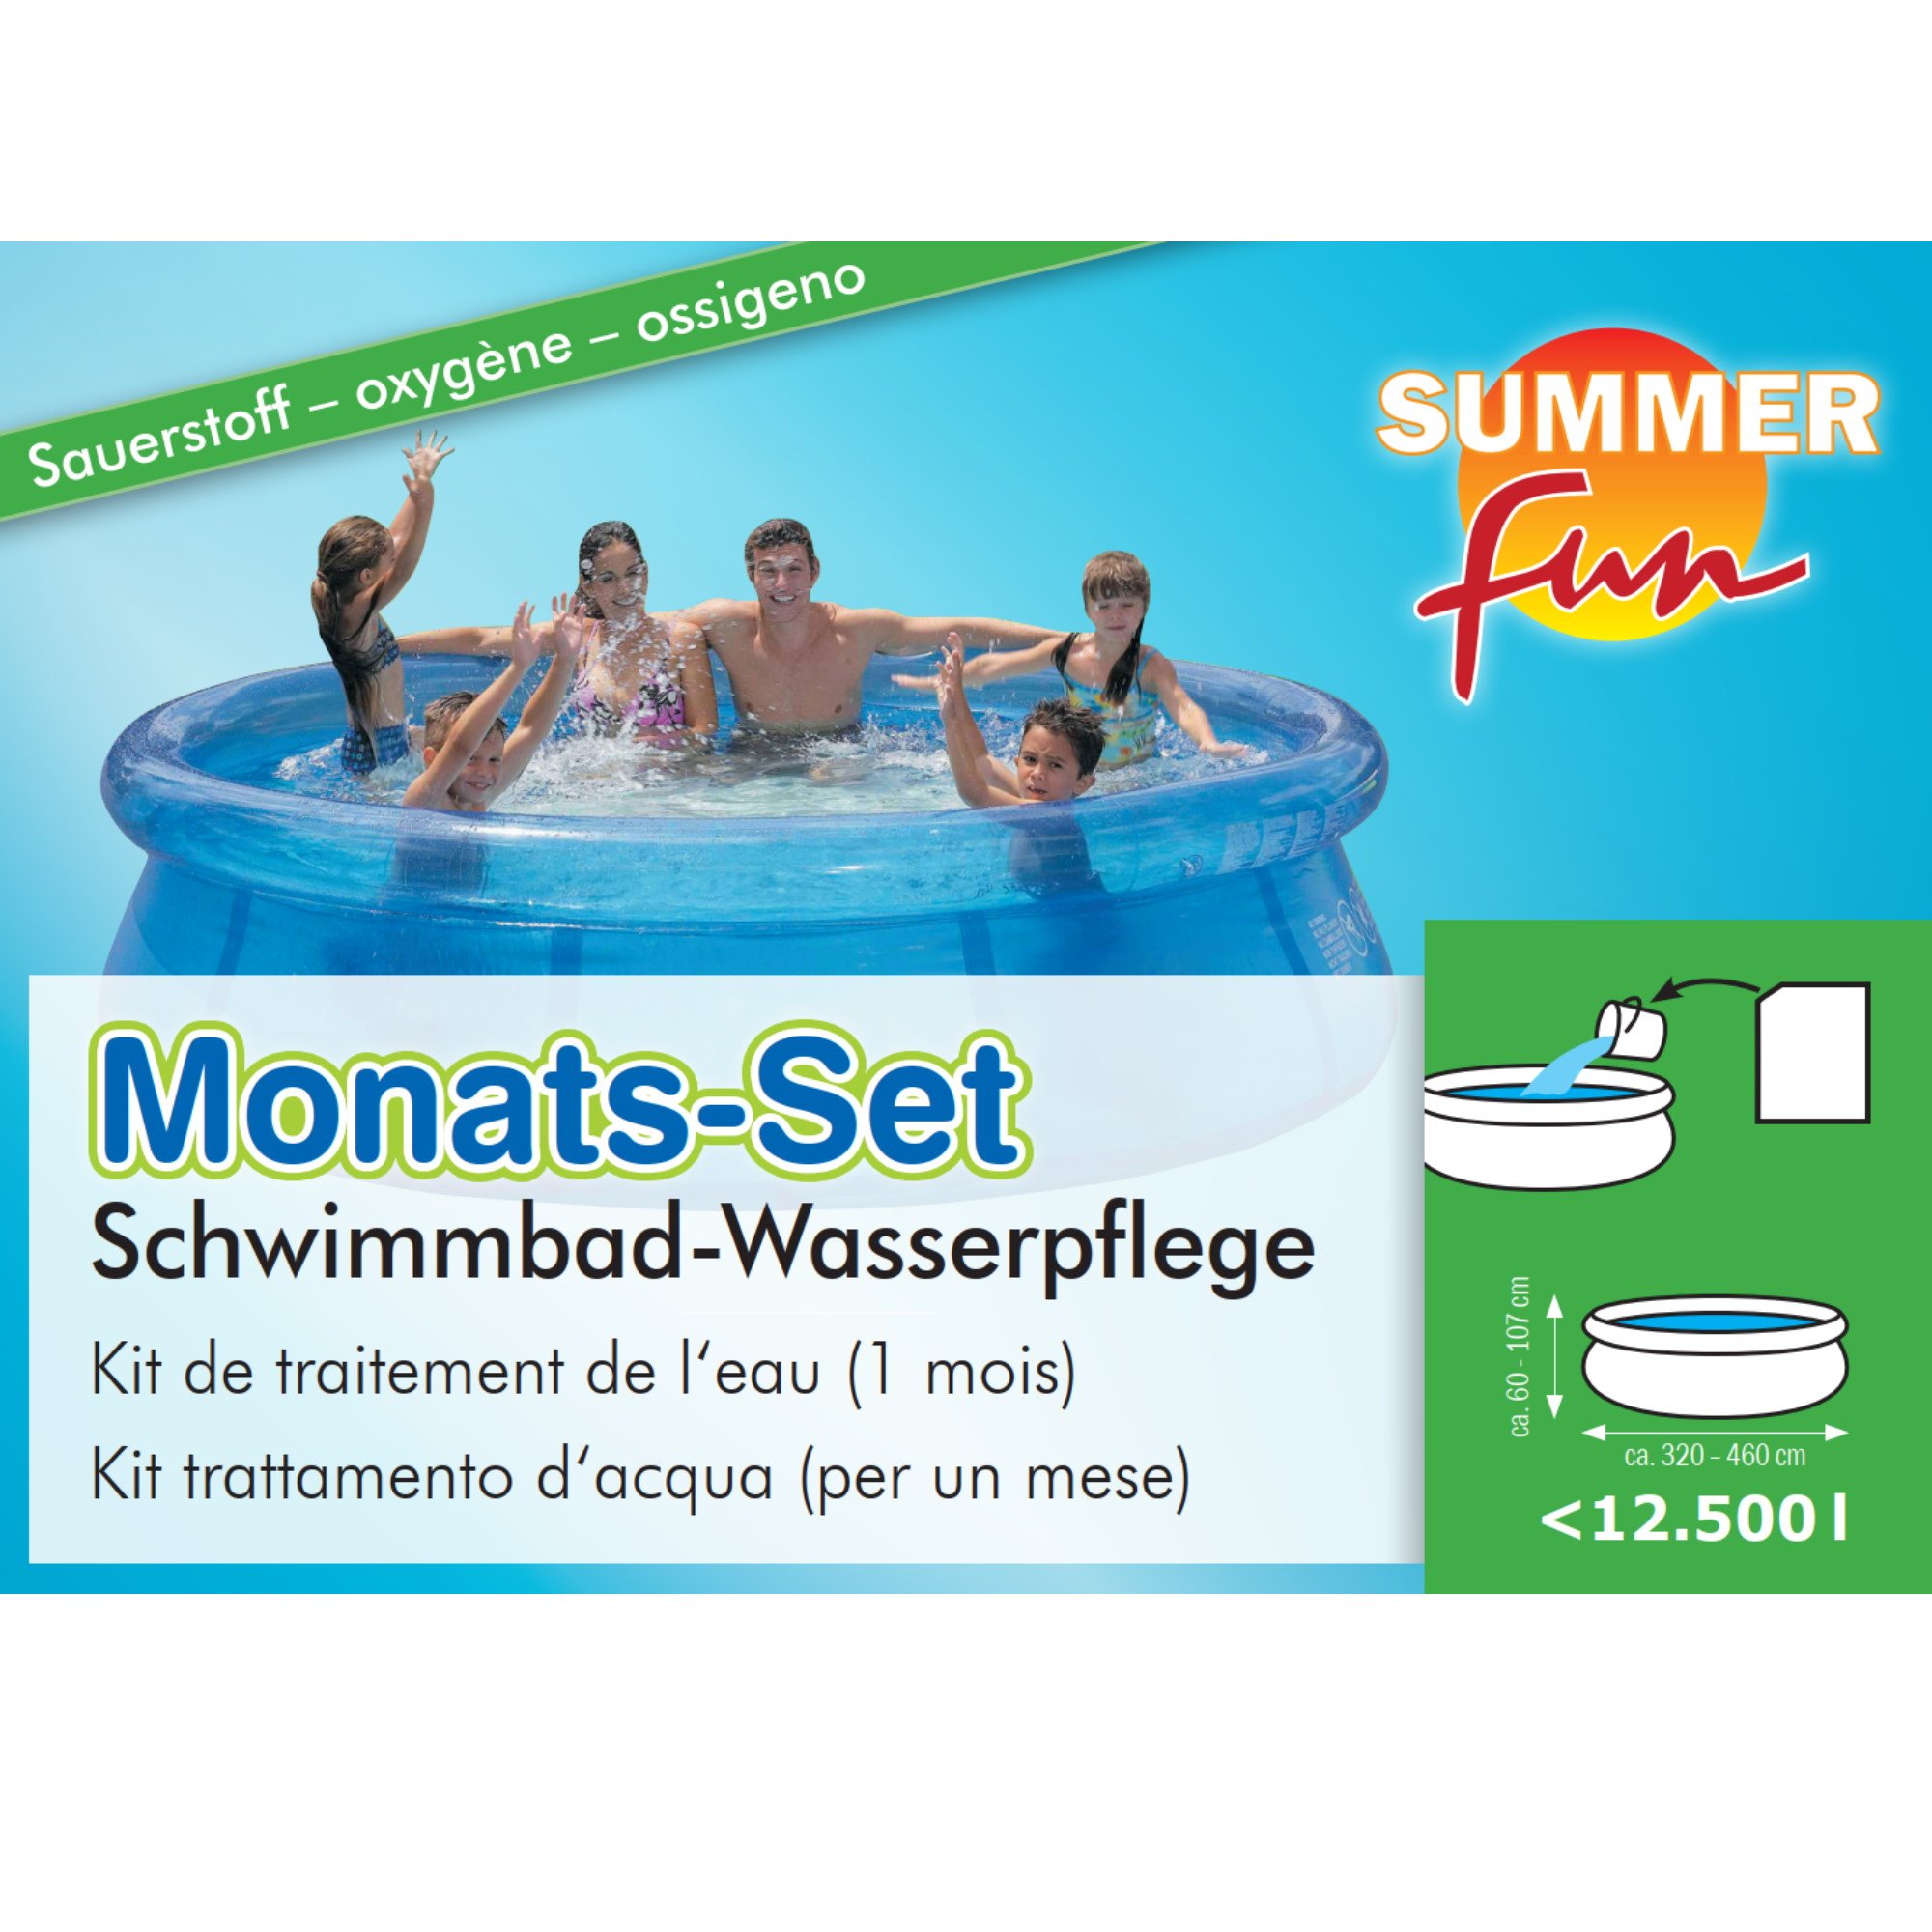 Monats-Set Sauerstoff - Schwimmbad-Wasserpflege - 0,86 kg